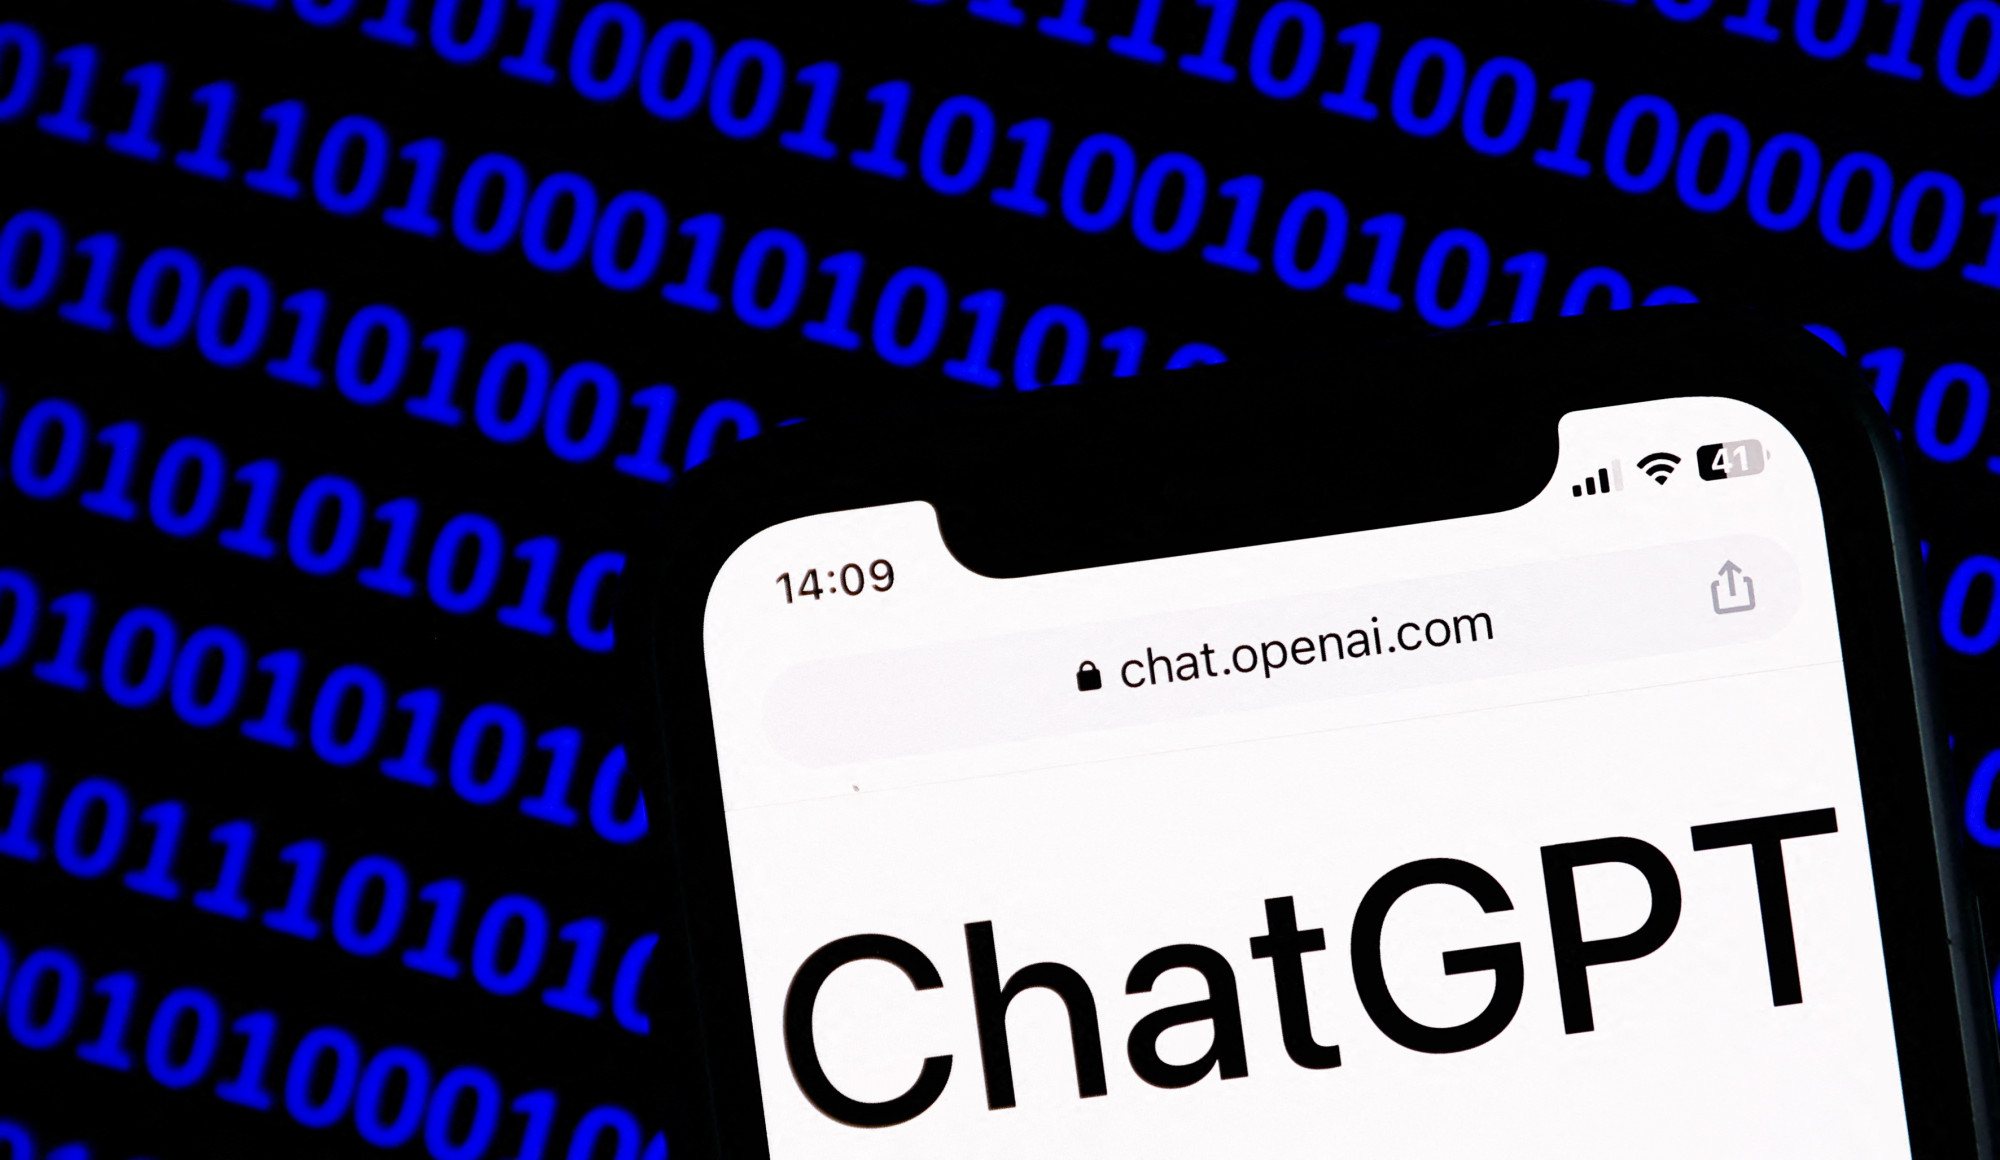 Kiberbiztonsági kockázatot jelenthet a ChatGPT egy tanulmány szerint